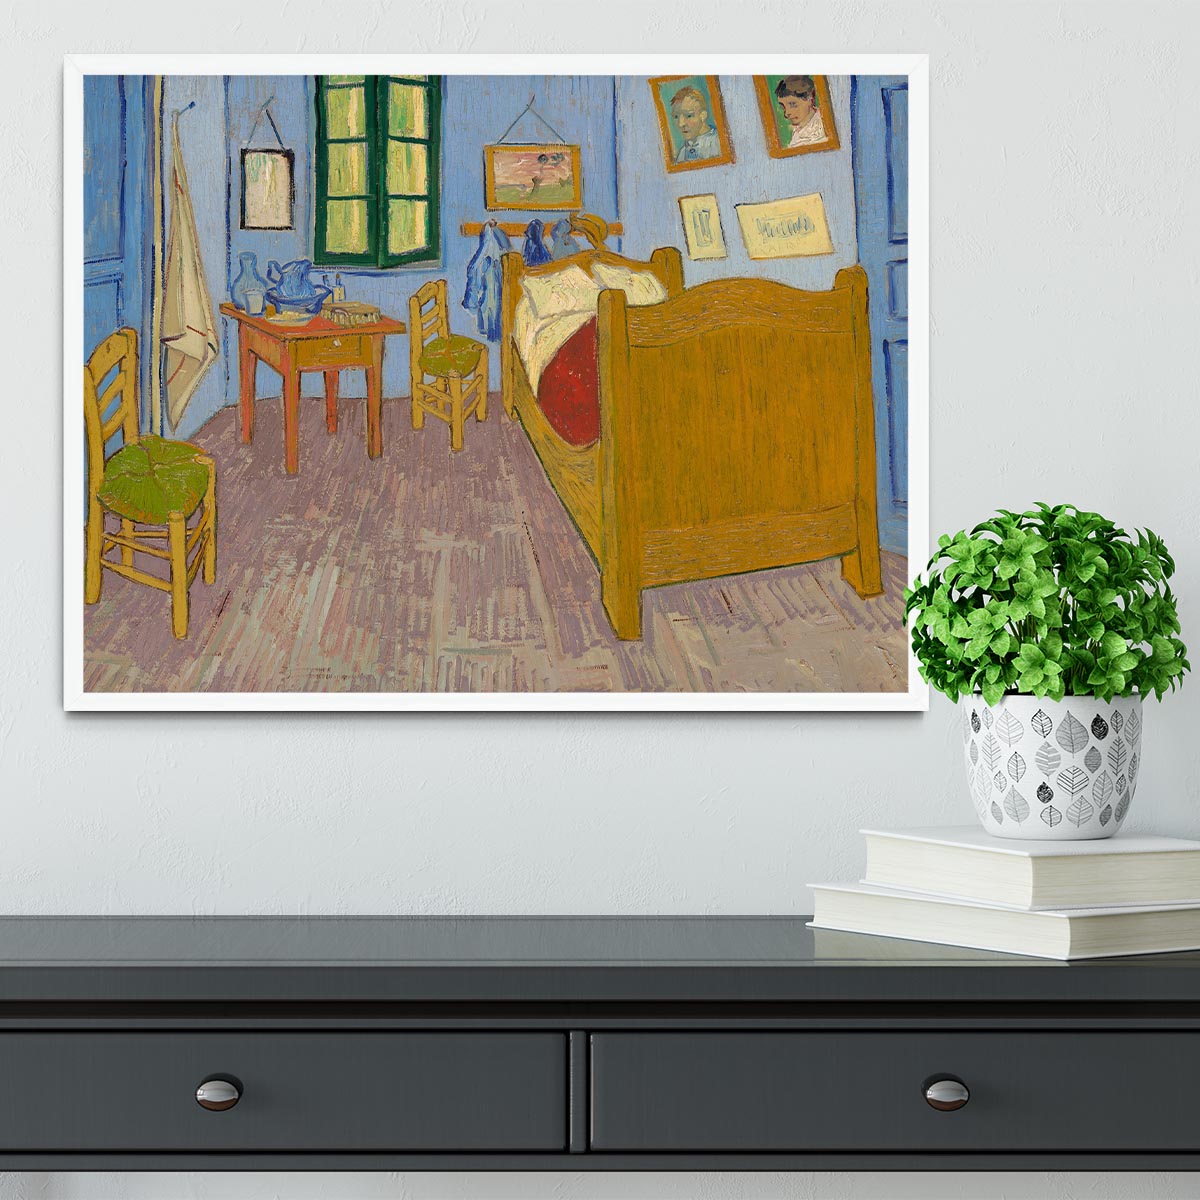 Vincents bedroom at Arles Framed Print - Canvas Art Rocks -6